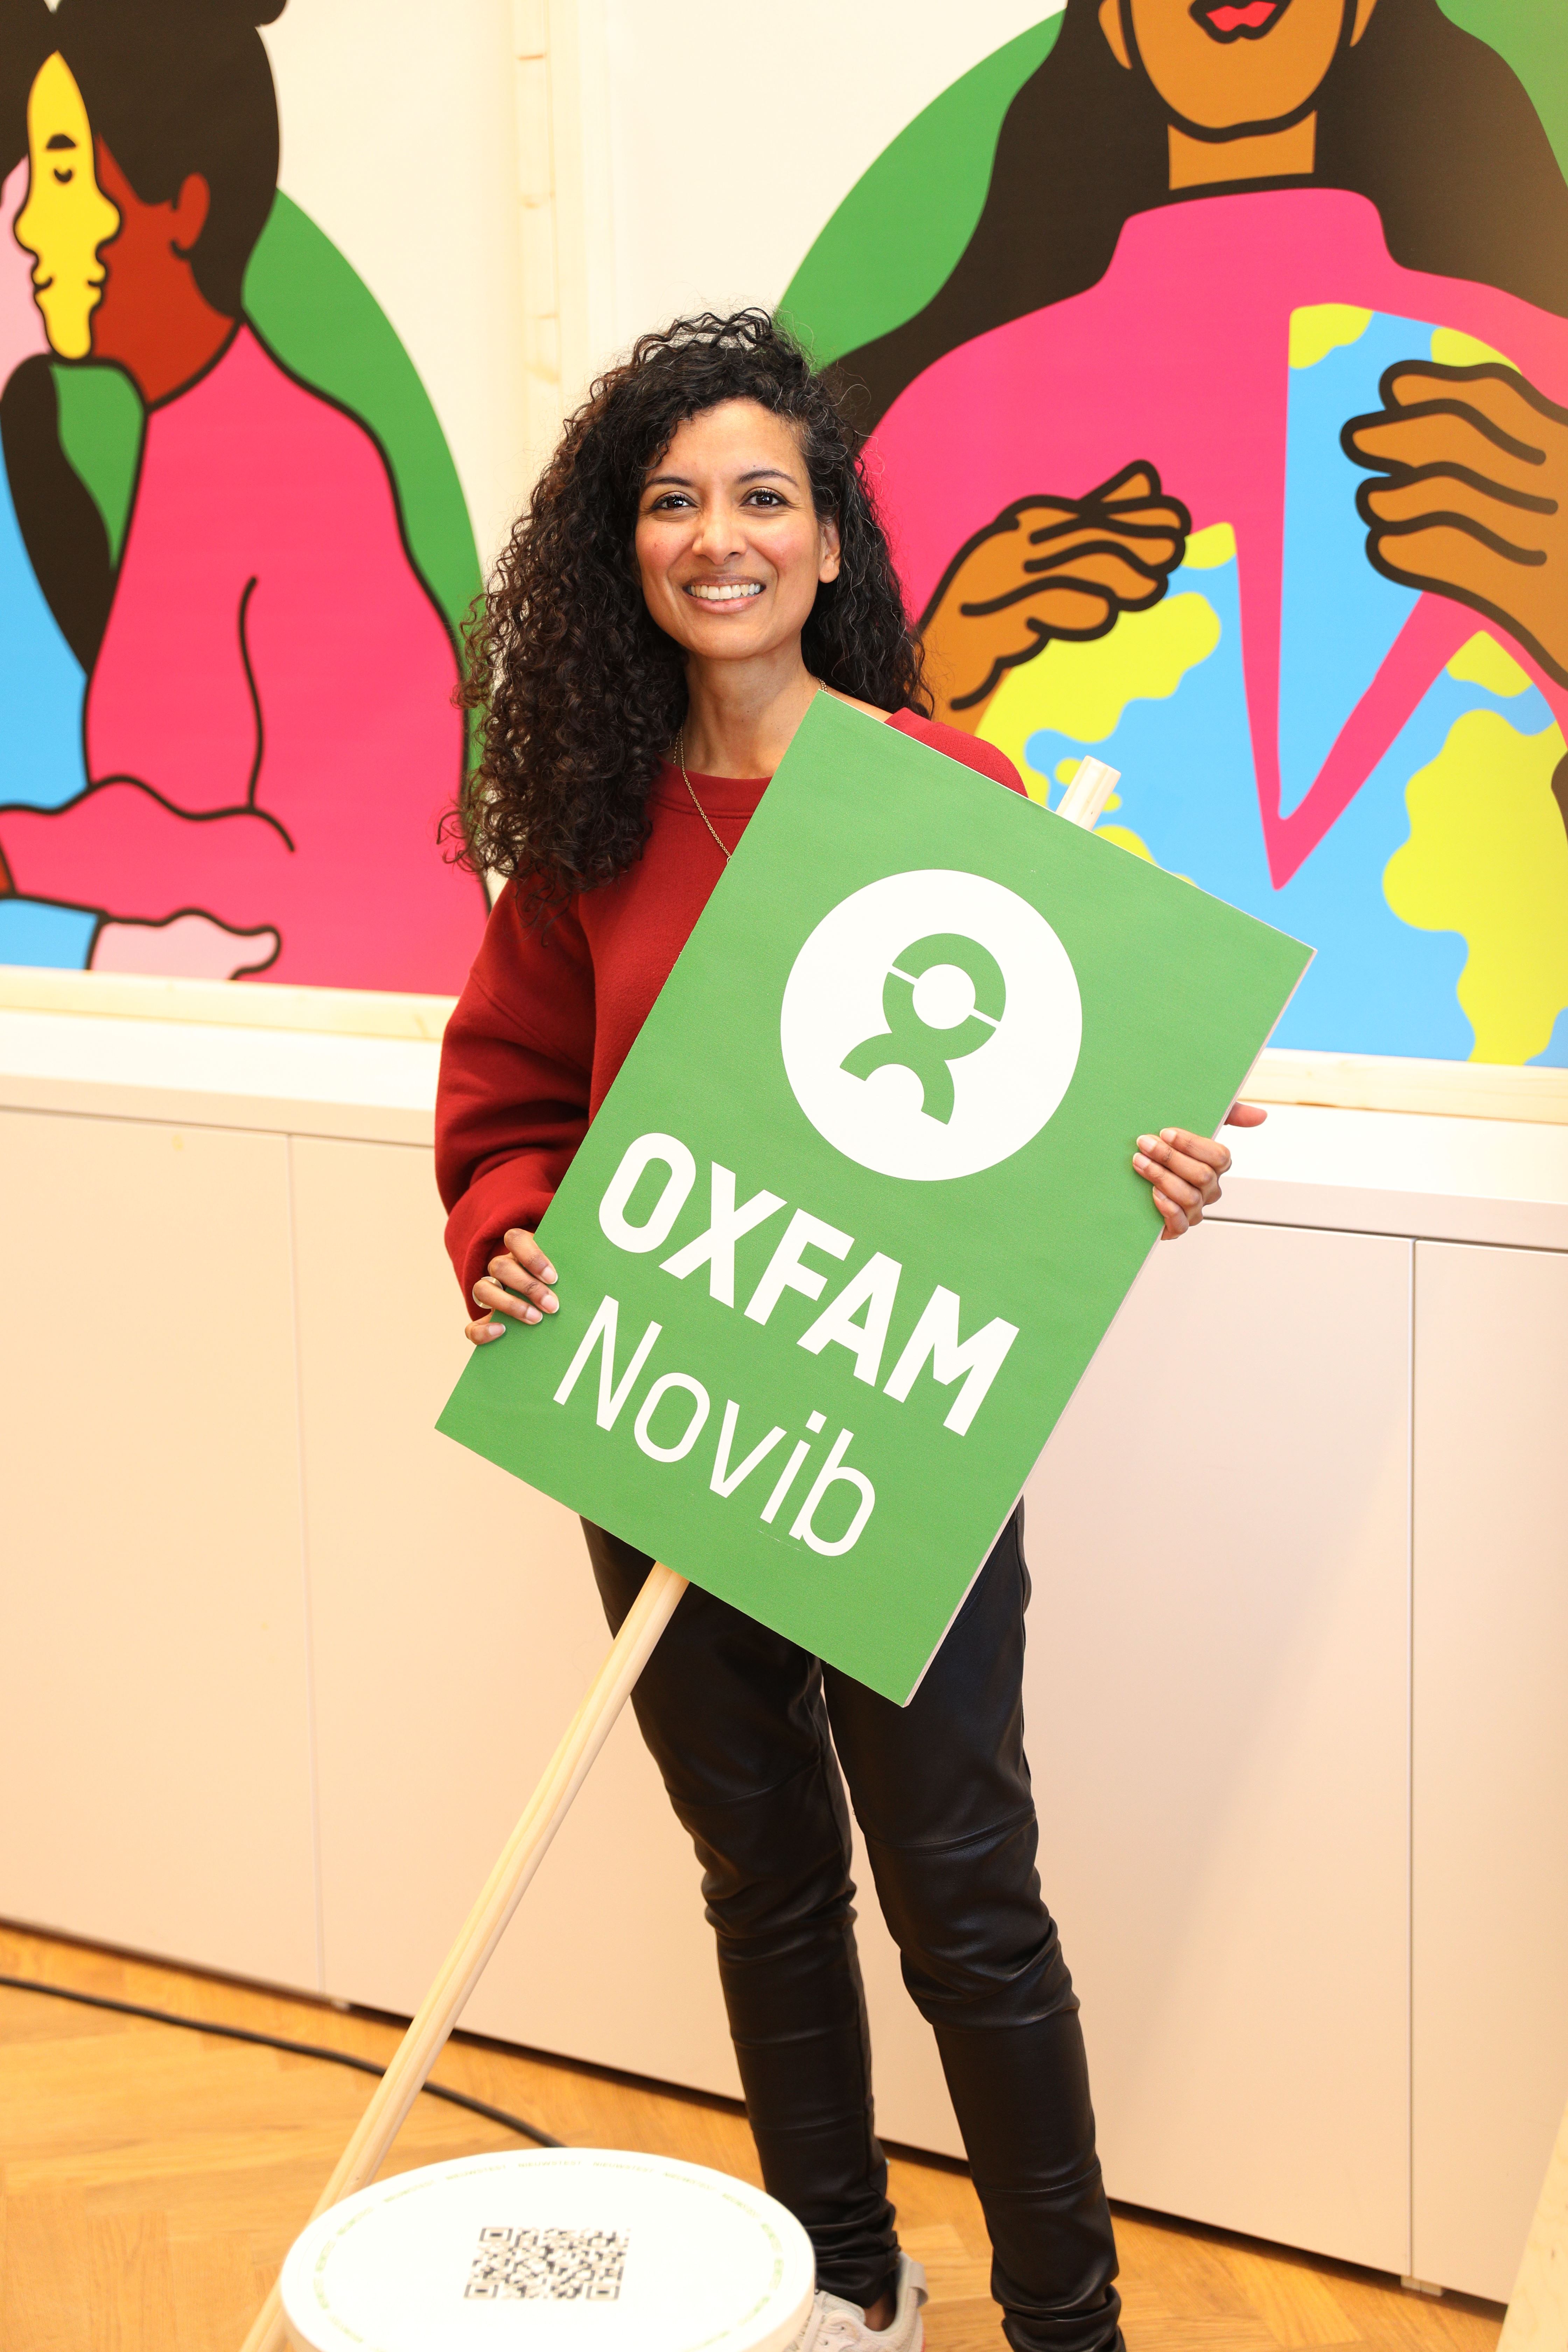 Een vrouw met donkere haren en een rode trui heeft een groen bord vast waar Oxfam Novib op staat.